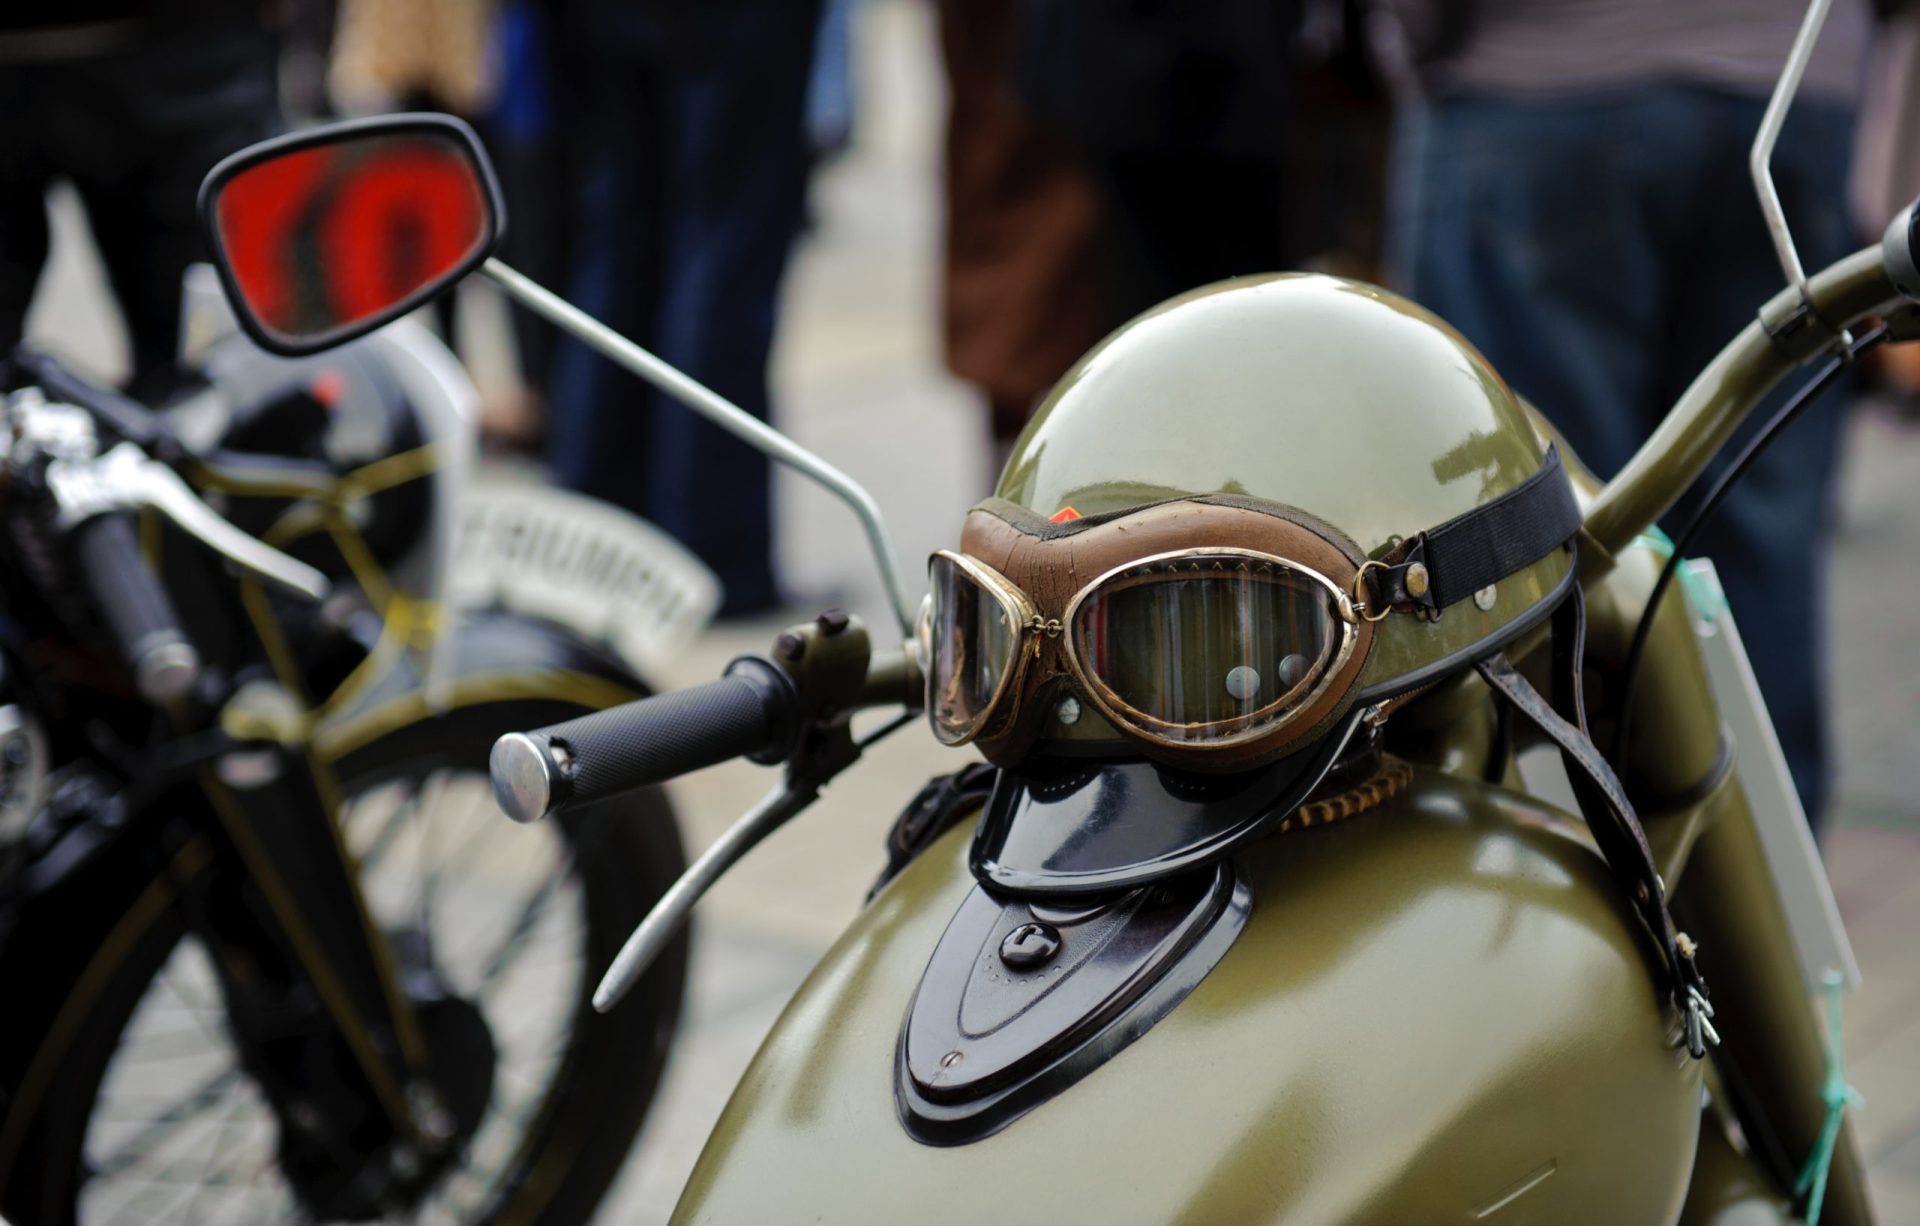 Petição pede legalização da circulação de motociclos entre automóveis em filas de trânsito